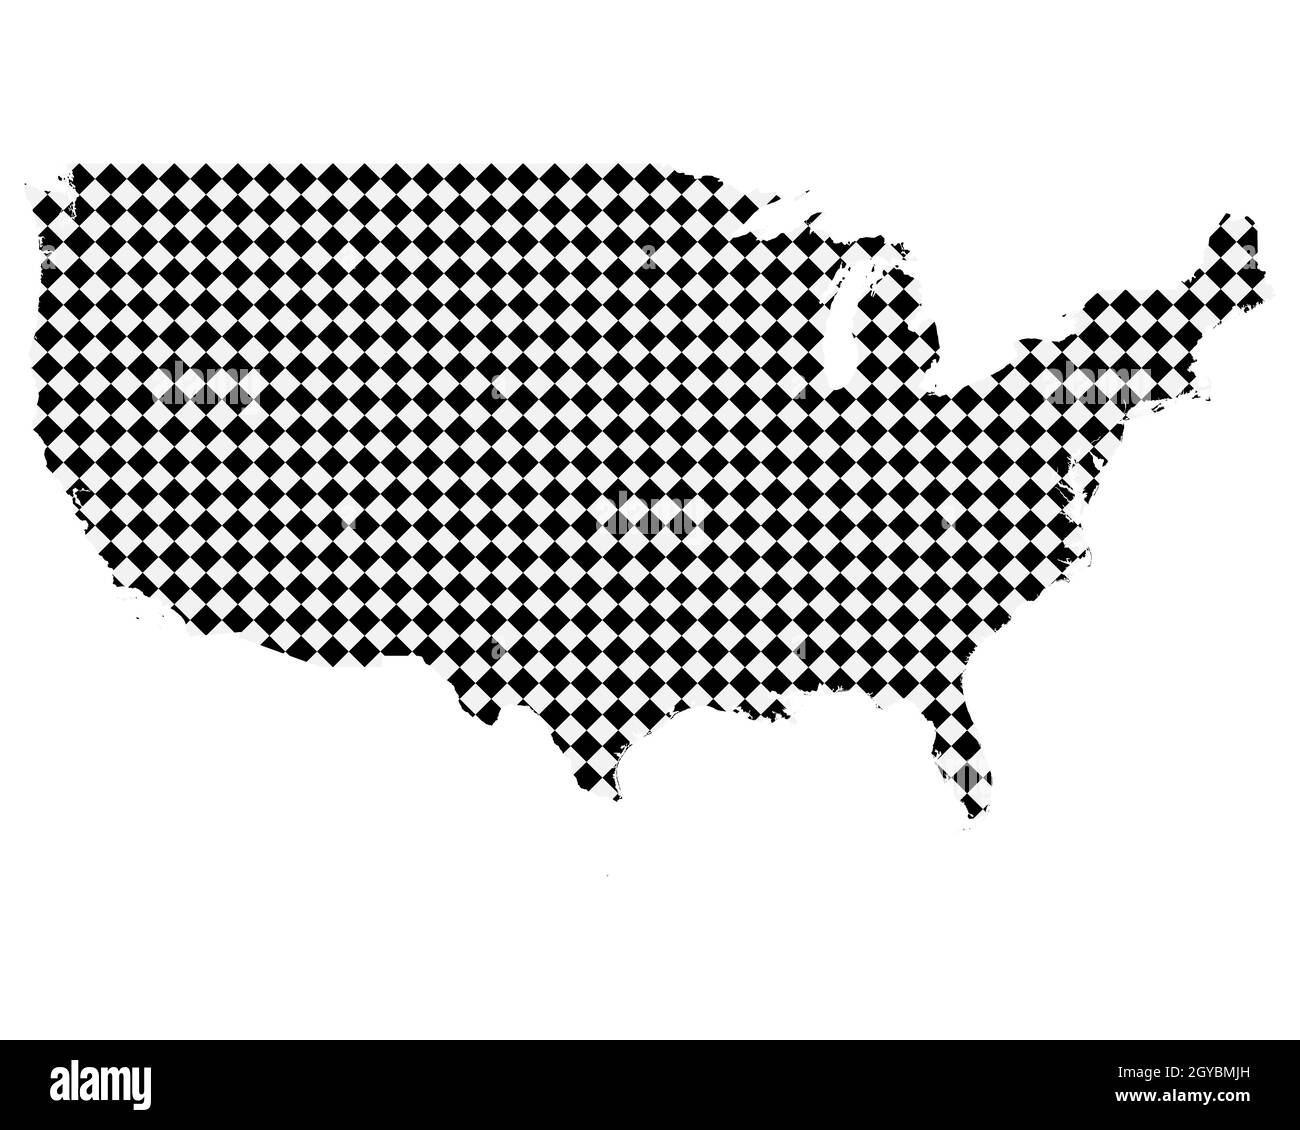 Karte der USA mit kleinen Rauten Stock Photo